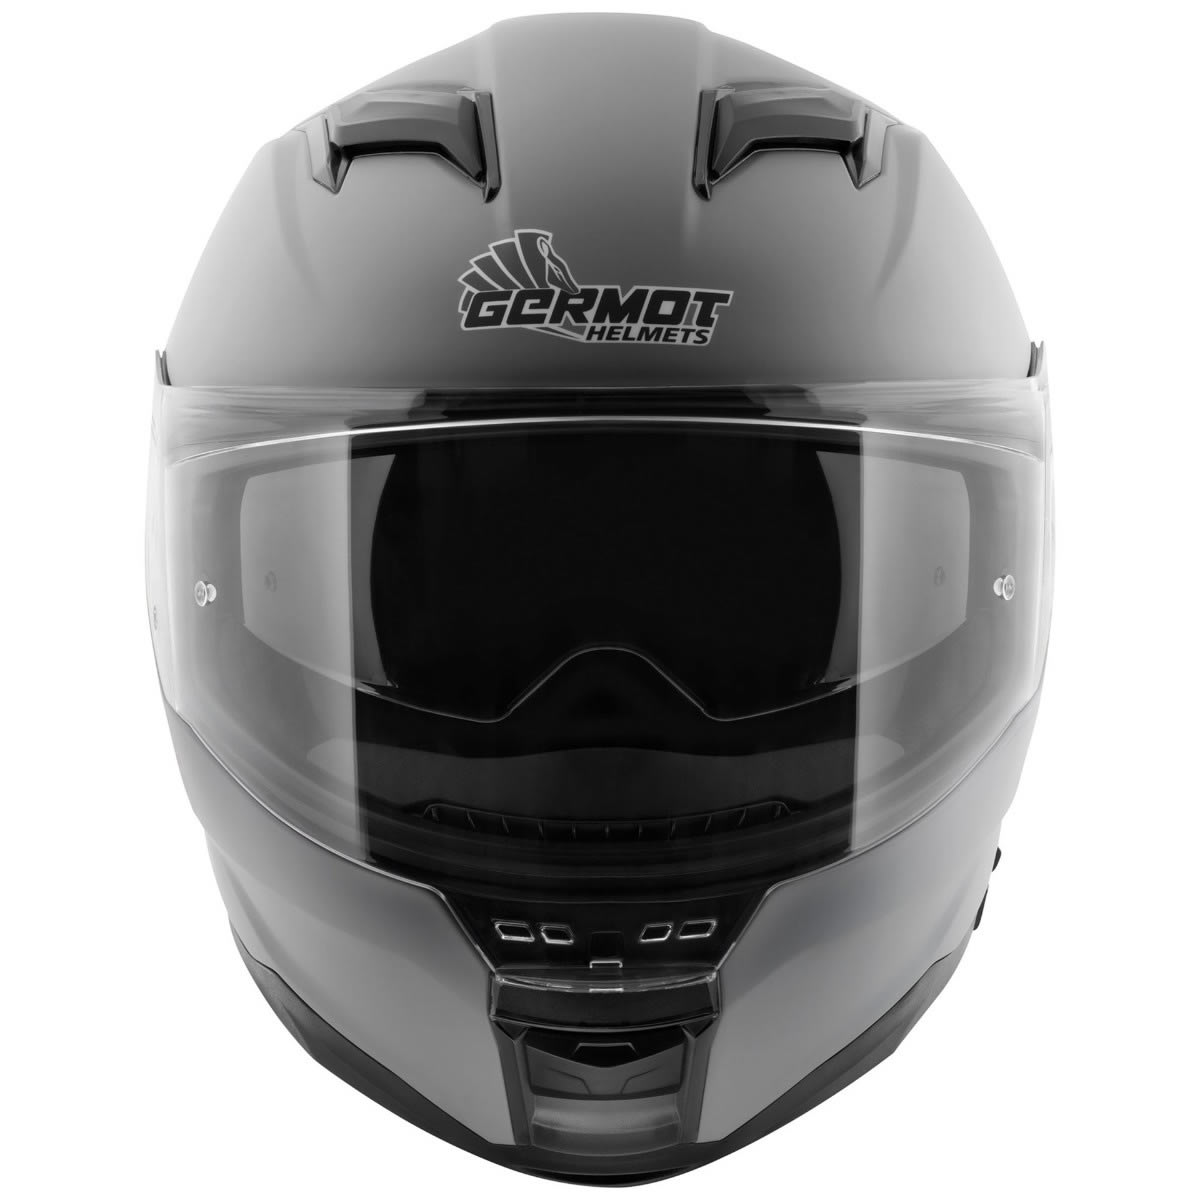 Germot GM 350 Helm, grau matt